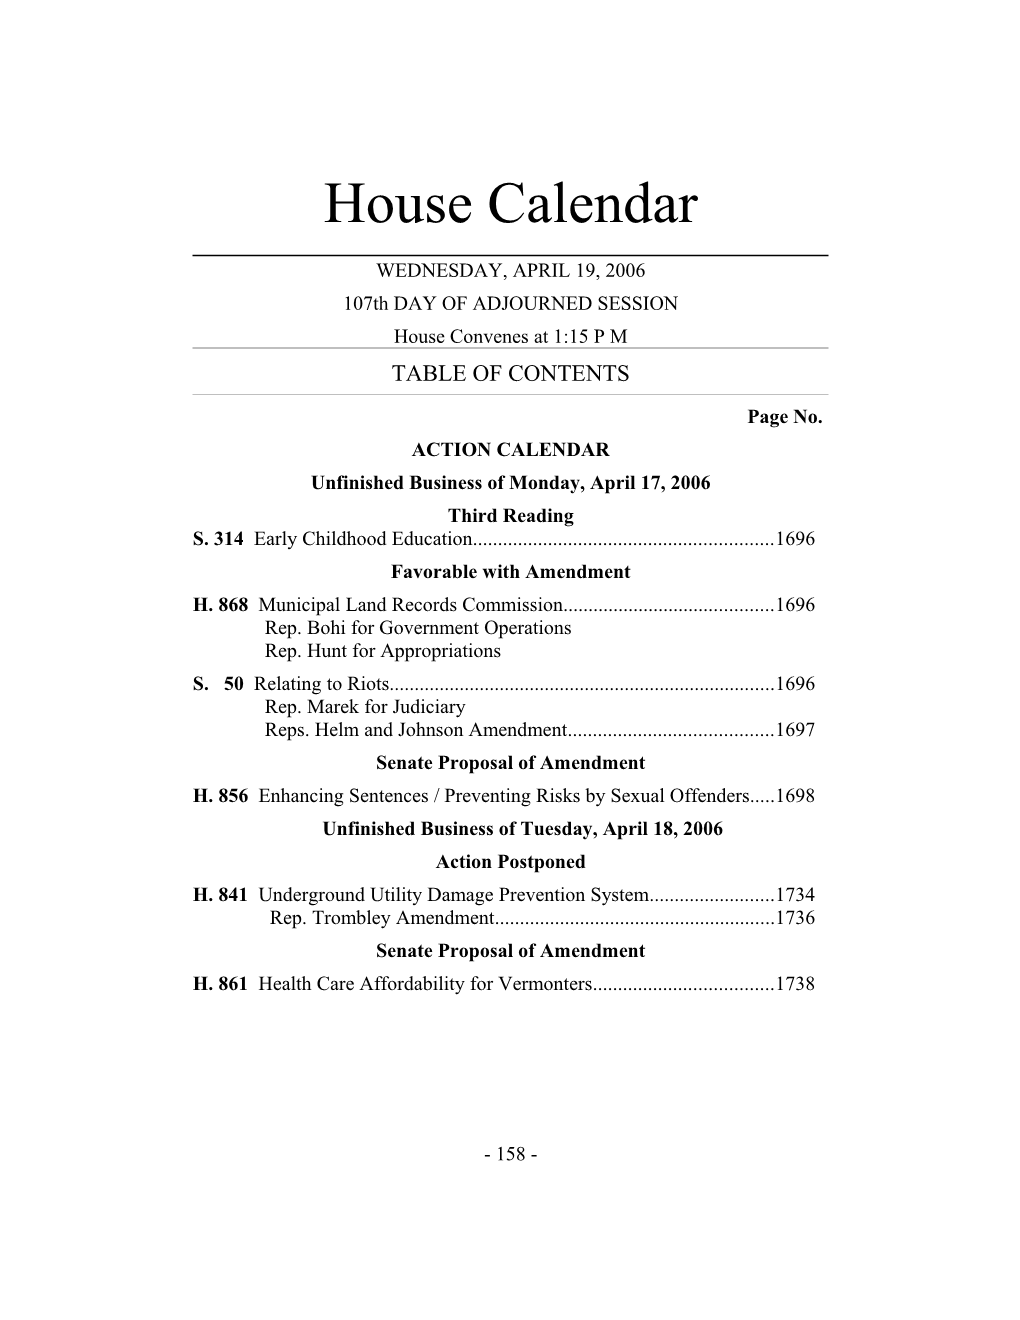 House Calendar s1